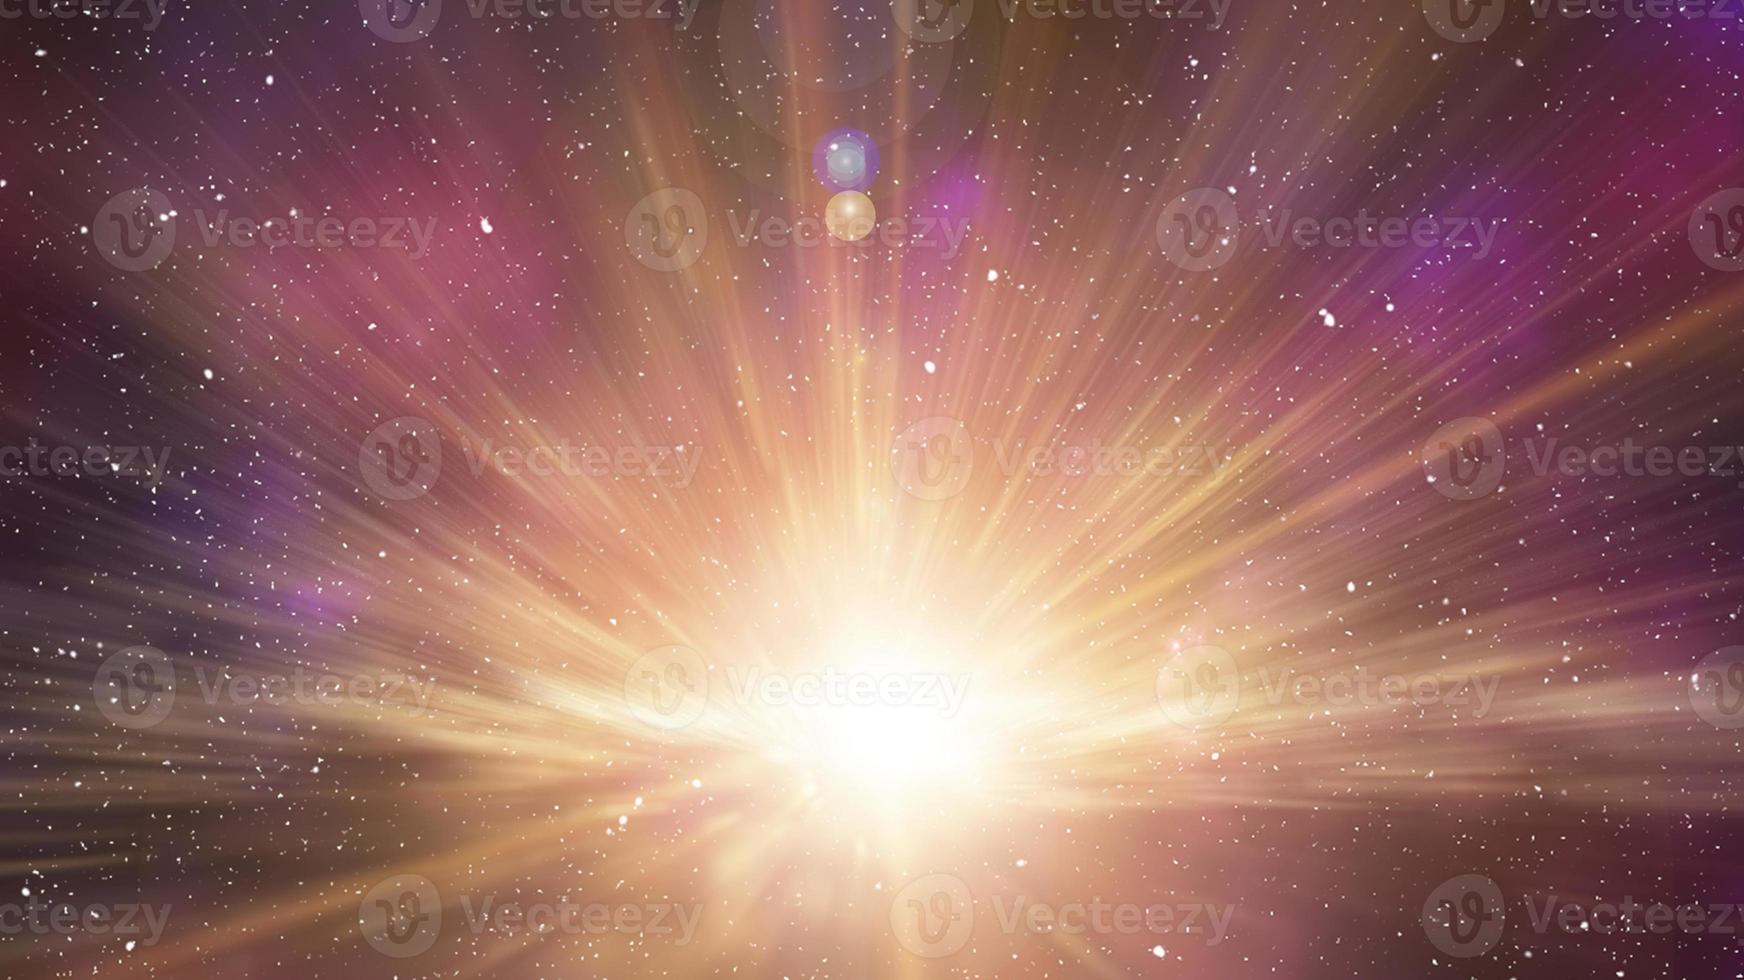 Explosión de estrella cósmica en el espacio ultraterrestre. explosión estelar. foto